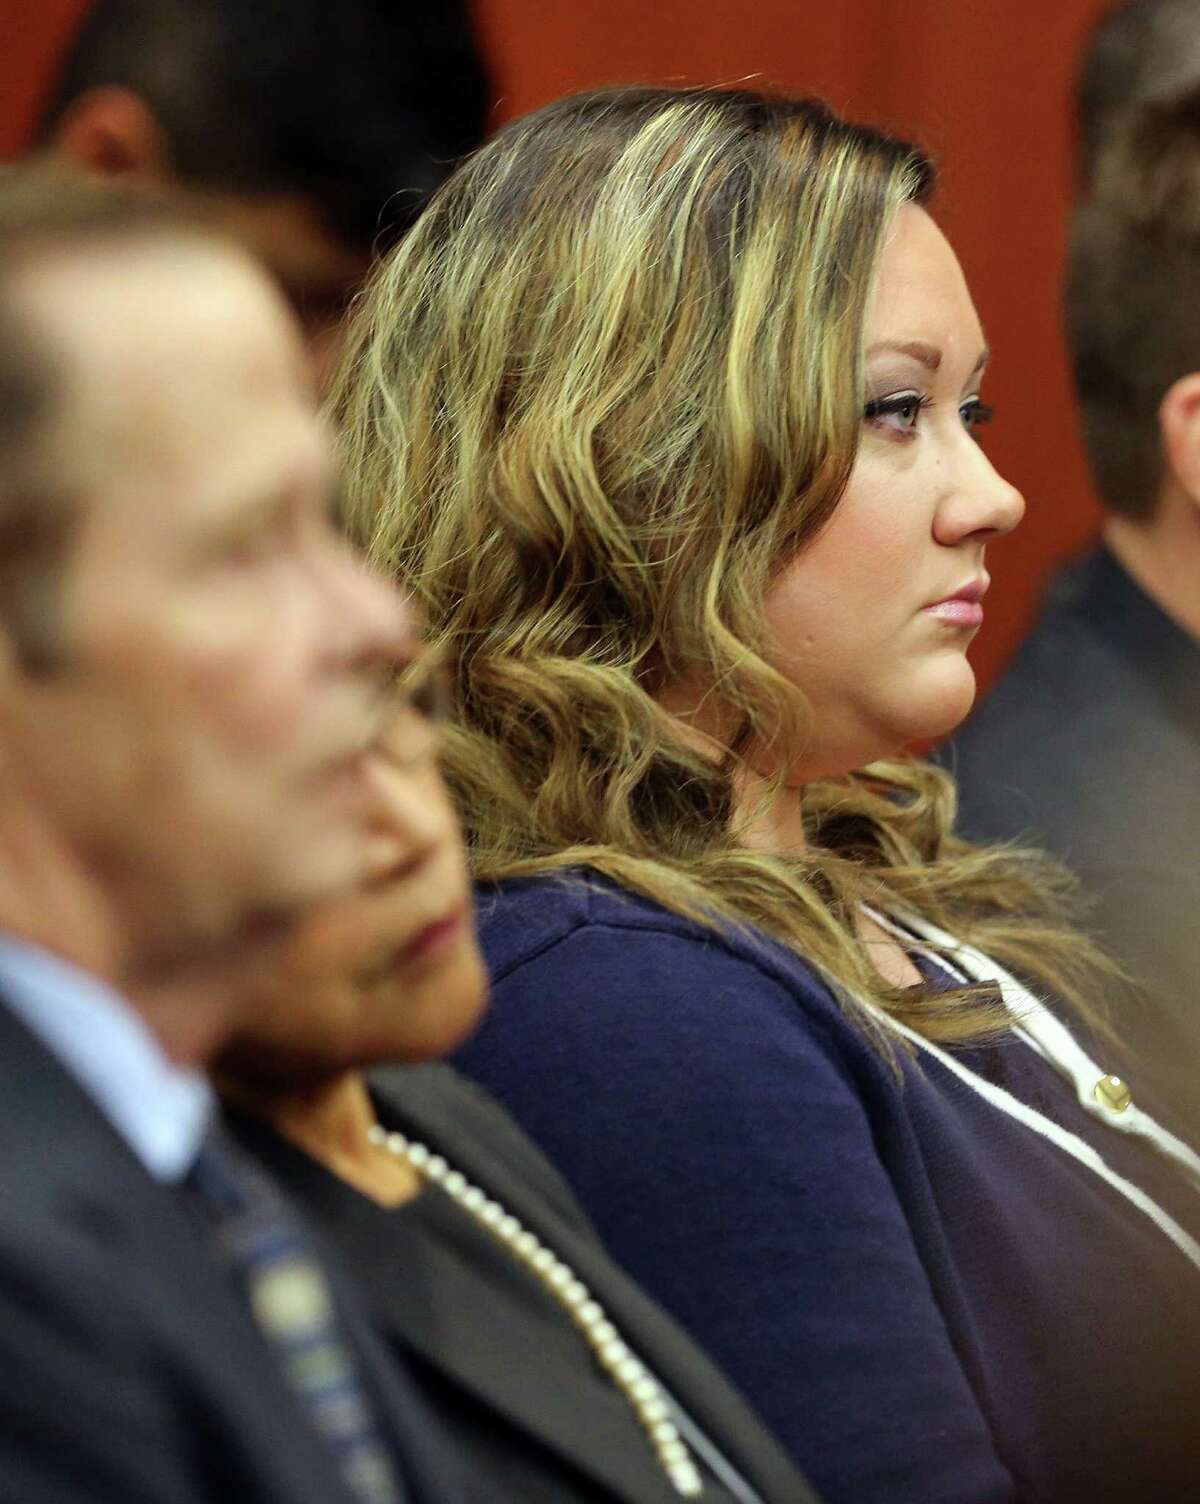 George Zimmerman S Wife Pleads Guilty To Perjury